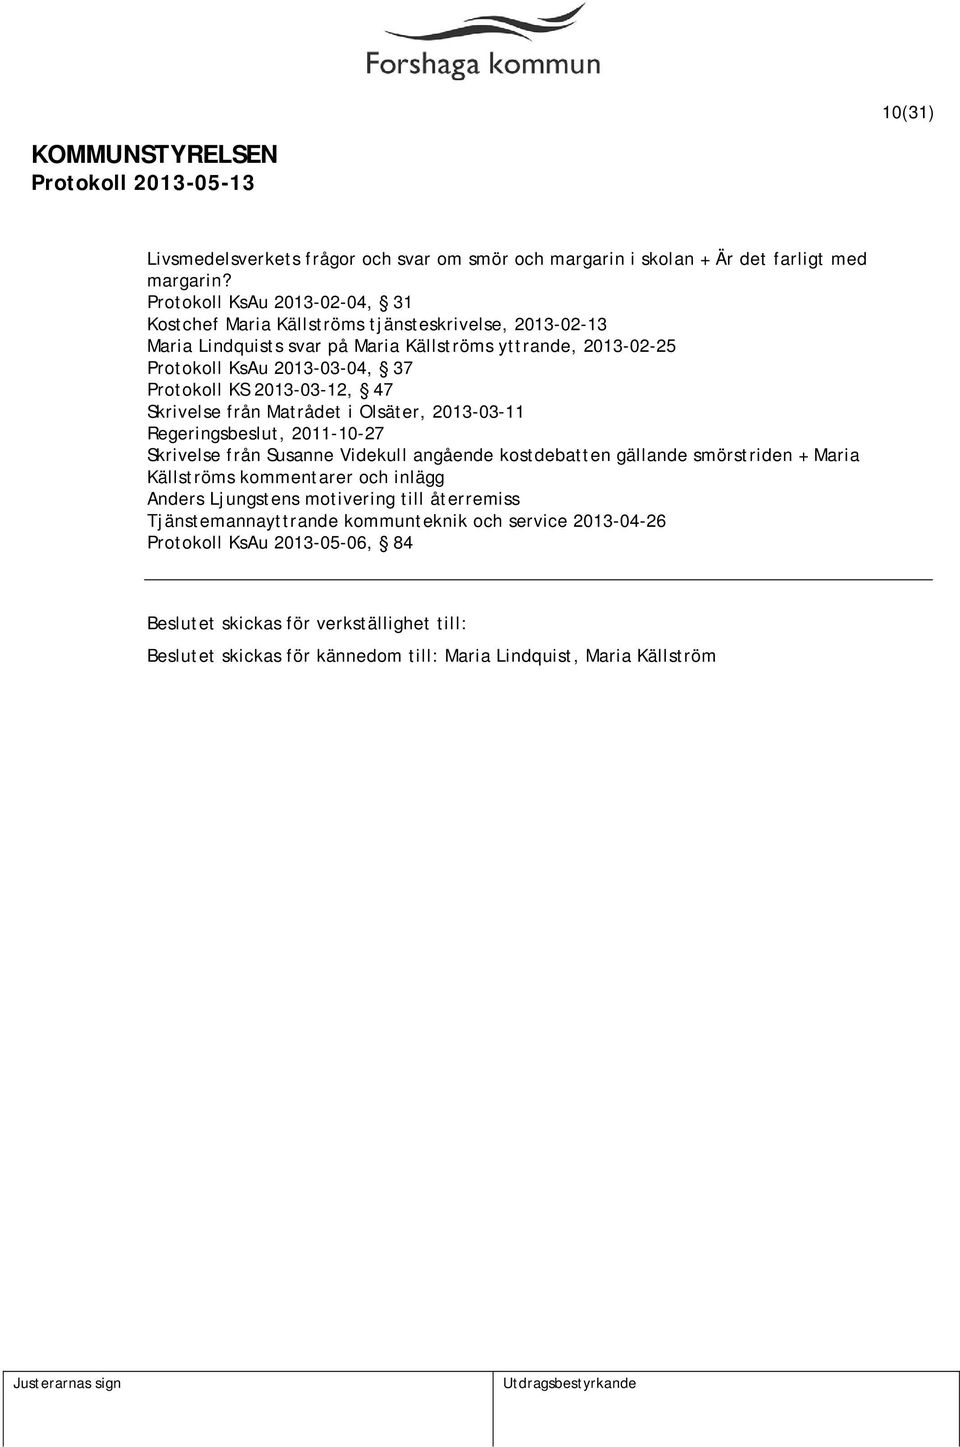 Protokoll KS 2013-03-12, 47 Skrivelse från Matrådet i Olsäter, 2013-03-11 Regeringsbeslut, 2011-10-27 Skrivelse från Susanne Videkull angående kostdebatten gällande smörstriden +